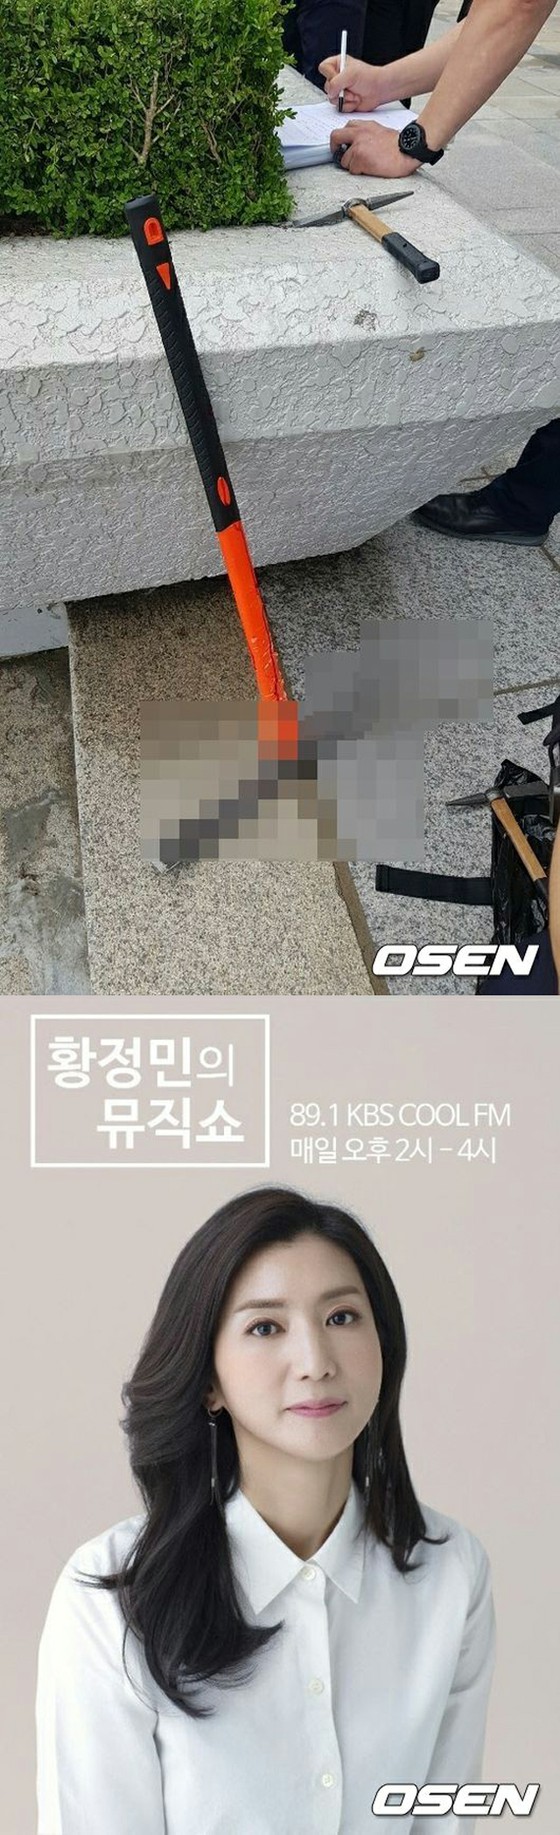 KBS，现场直播期间无线电广播工作室的玻璃窗被打碎的情况……令人震惊的一幕，没有造成生命损失